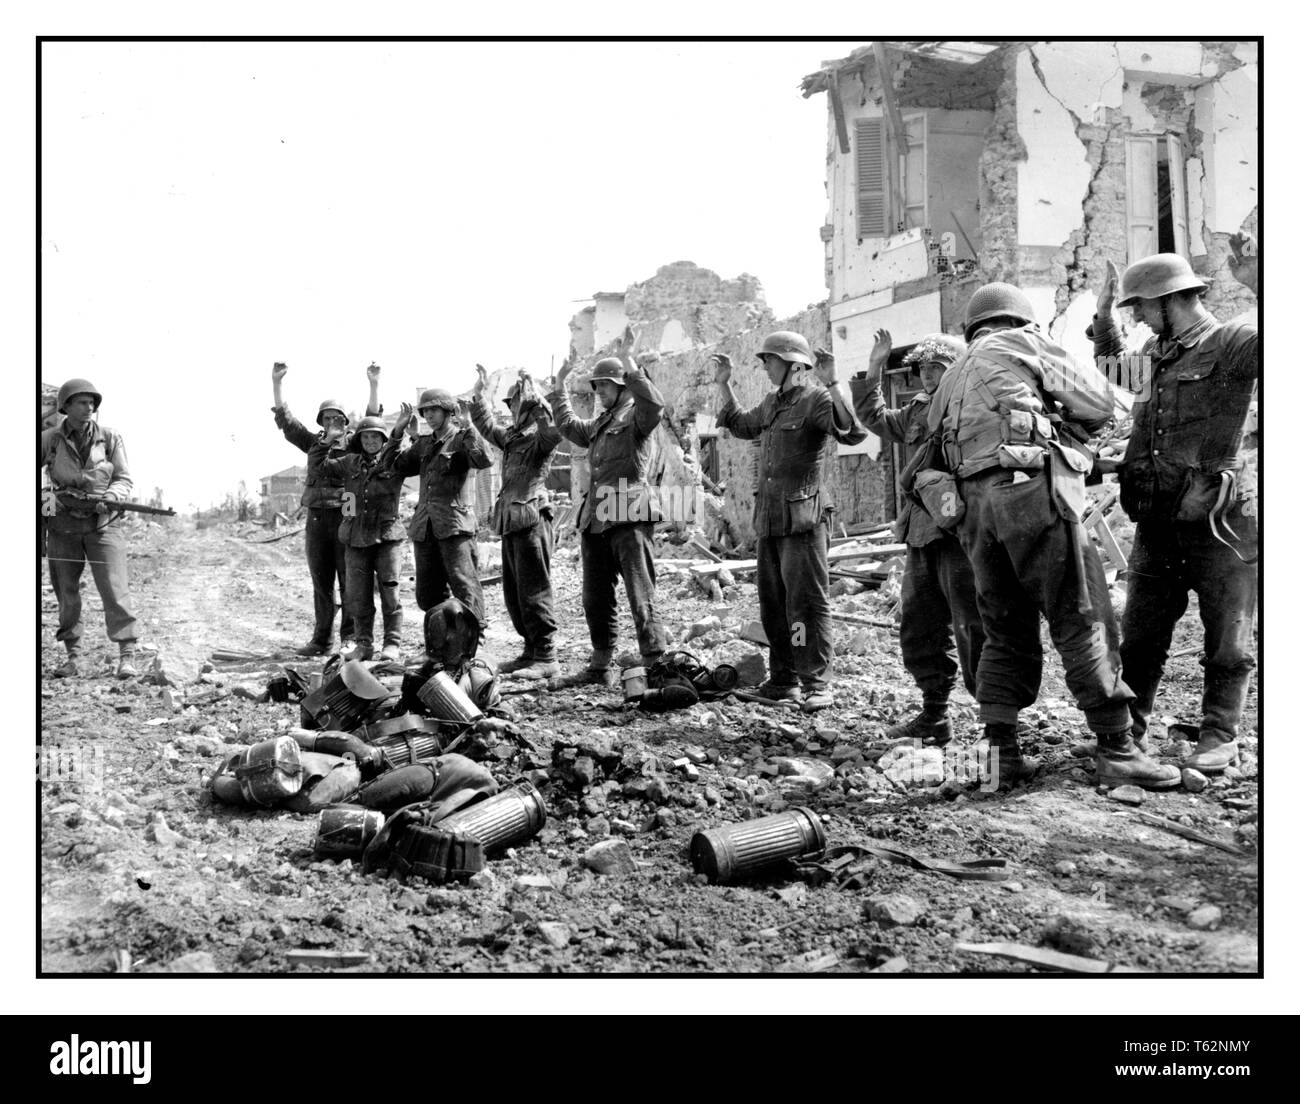 Image de propagande de la Seconde Guerre mondiale des troupes allemandes capturées qui se sont rendus à l'armée américaine à Anzio Italie. Les troupes allemandes se rendent aux forces américaines la bataille d'Anzio était une bataille de la campagne italienne de la Seconde Guerre mondiale qui a eu lieu du 22 janvier 1944 au 5 juin 1944 deuxième Guerre mondiale Banque D'Images